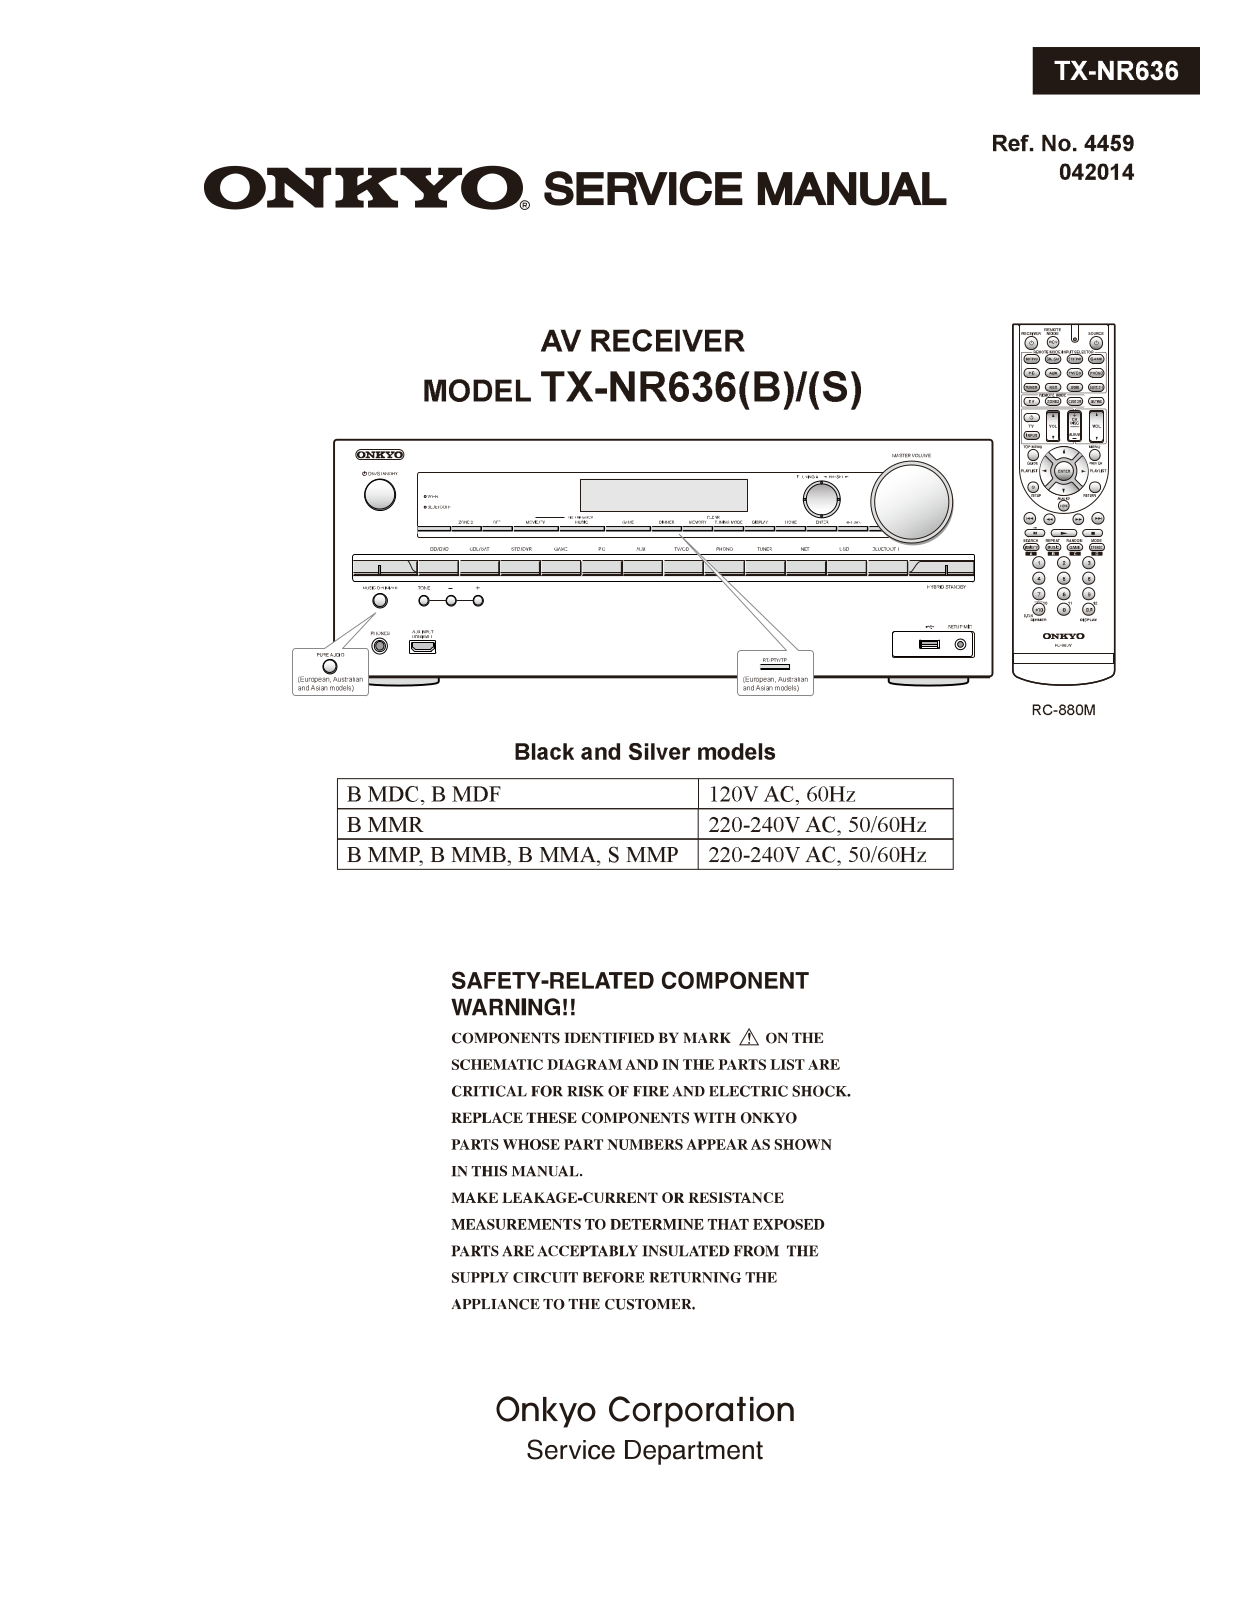 Onkyo TXNR-636 Service Manual